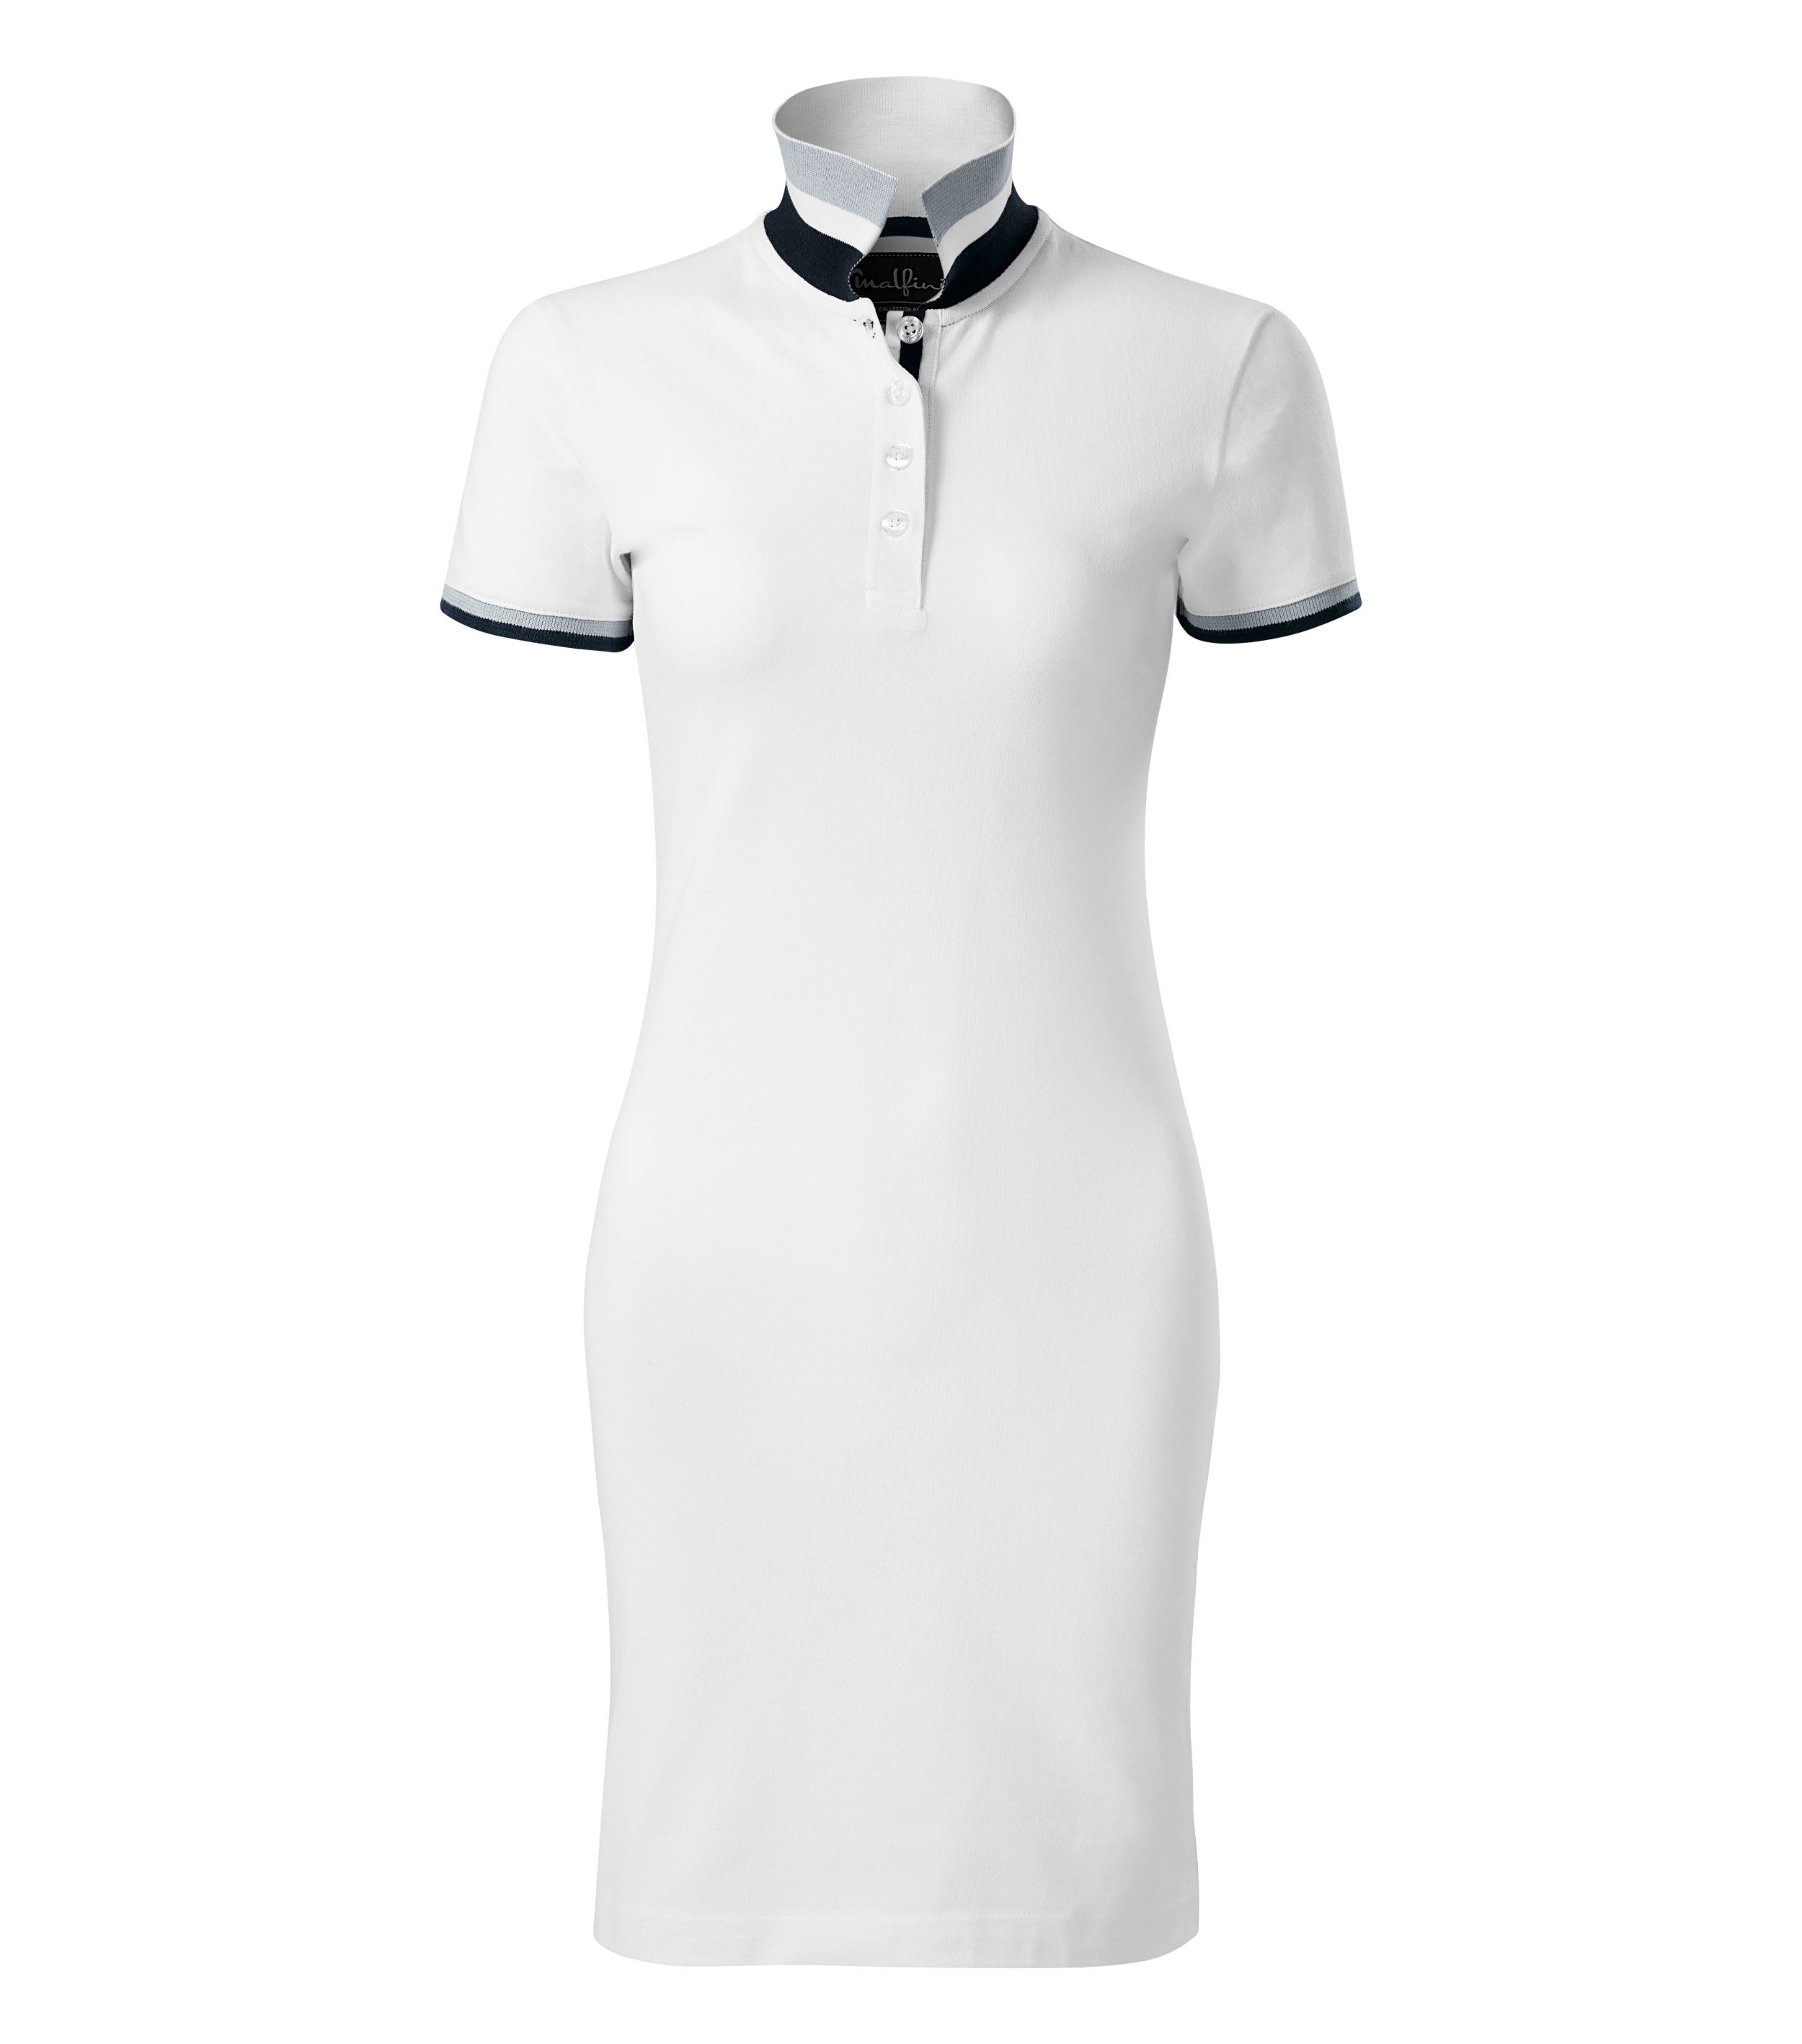 Sommerkleid Damen - DRESS UP 271 - leicht taillierter Schnitt mit Seitennähten und Schnitt mit beidseitigem Seitenschlitz und einem Kontrastband auf der unteren Knopfleiste - Sommerkleider